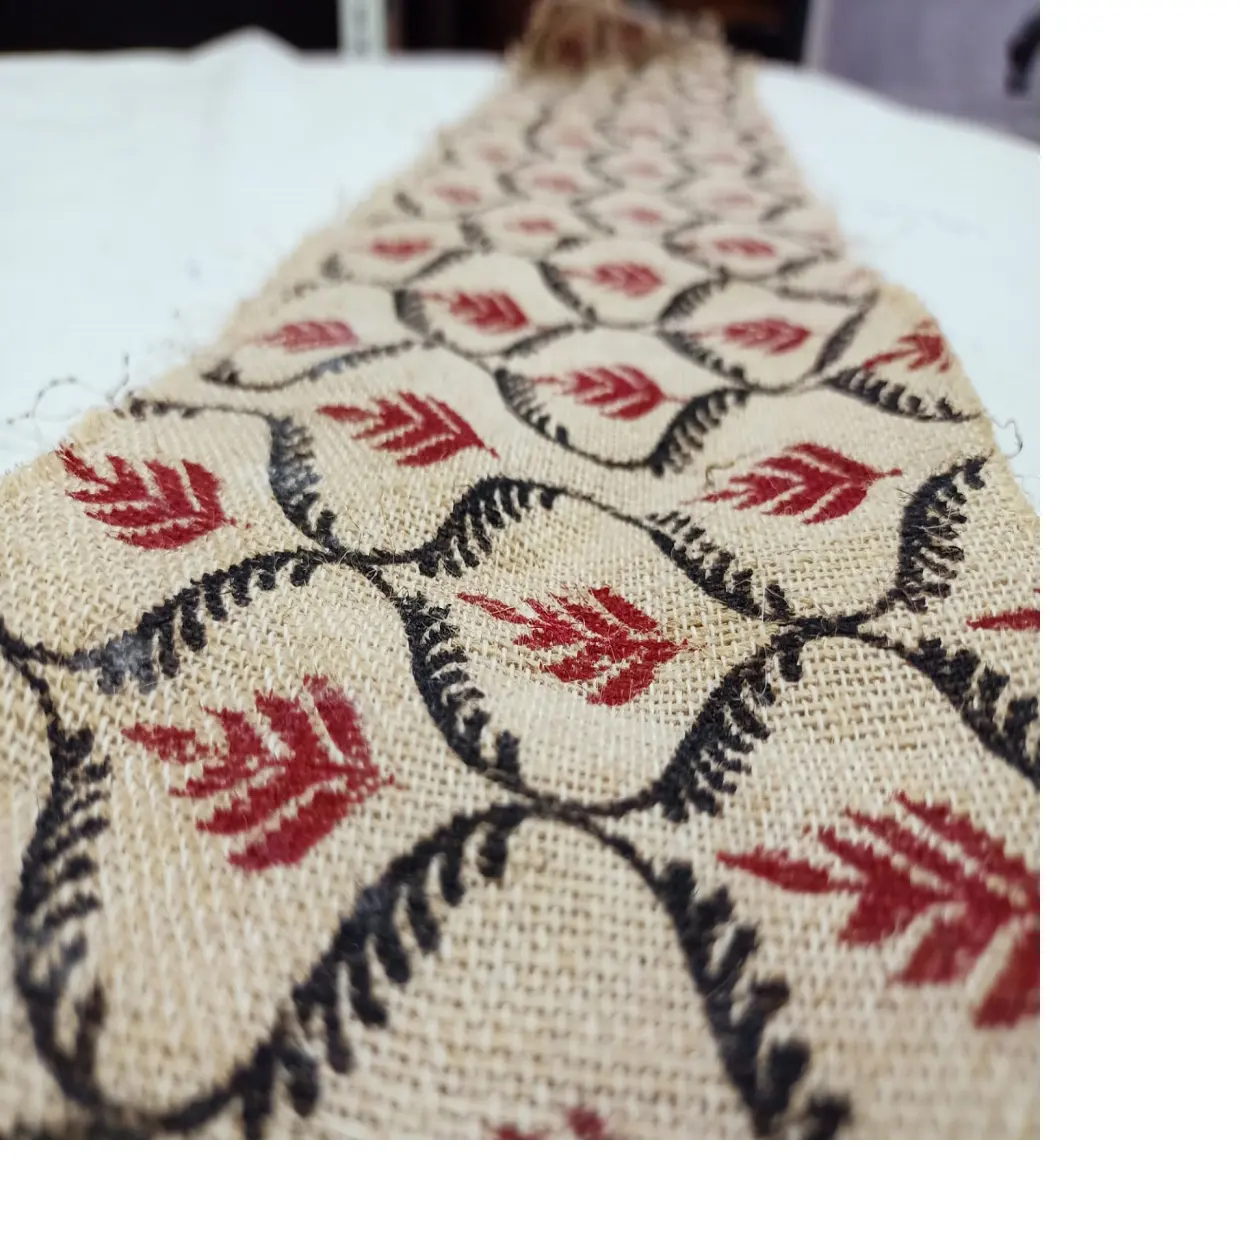 Tecidos de cânhamo feitos sob encomenda feitos a partir de cânhamo 100% adequado para designers de roupas, pode ser feito sob encomenda com seus desenhos